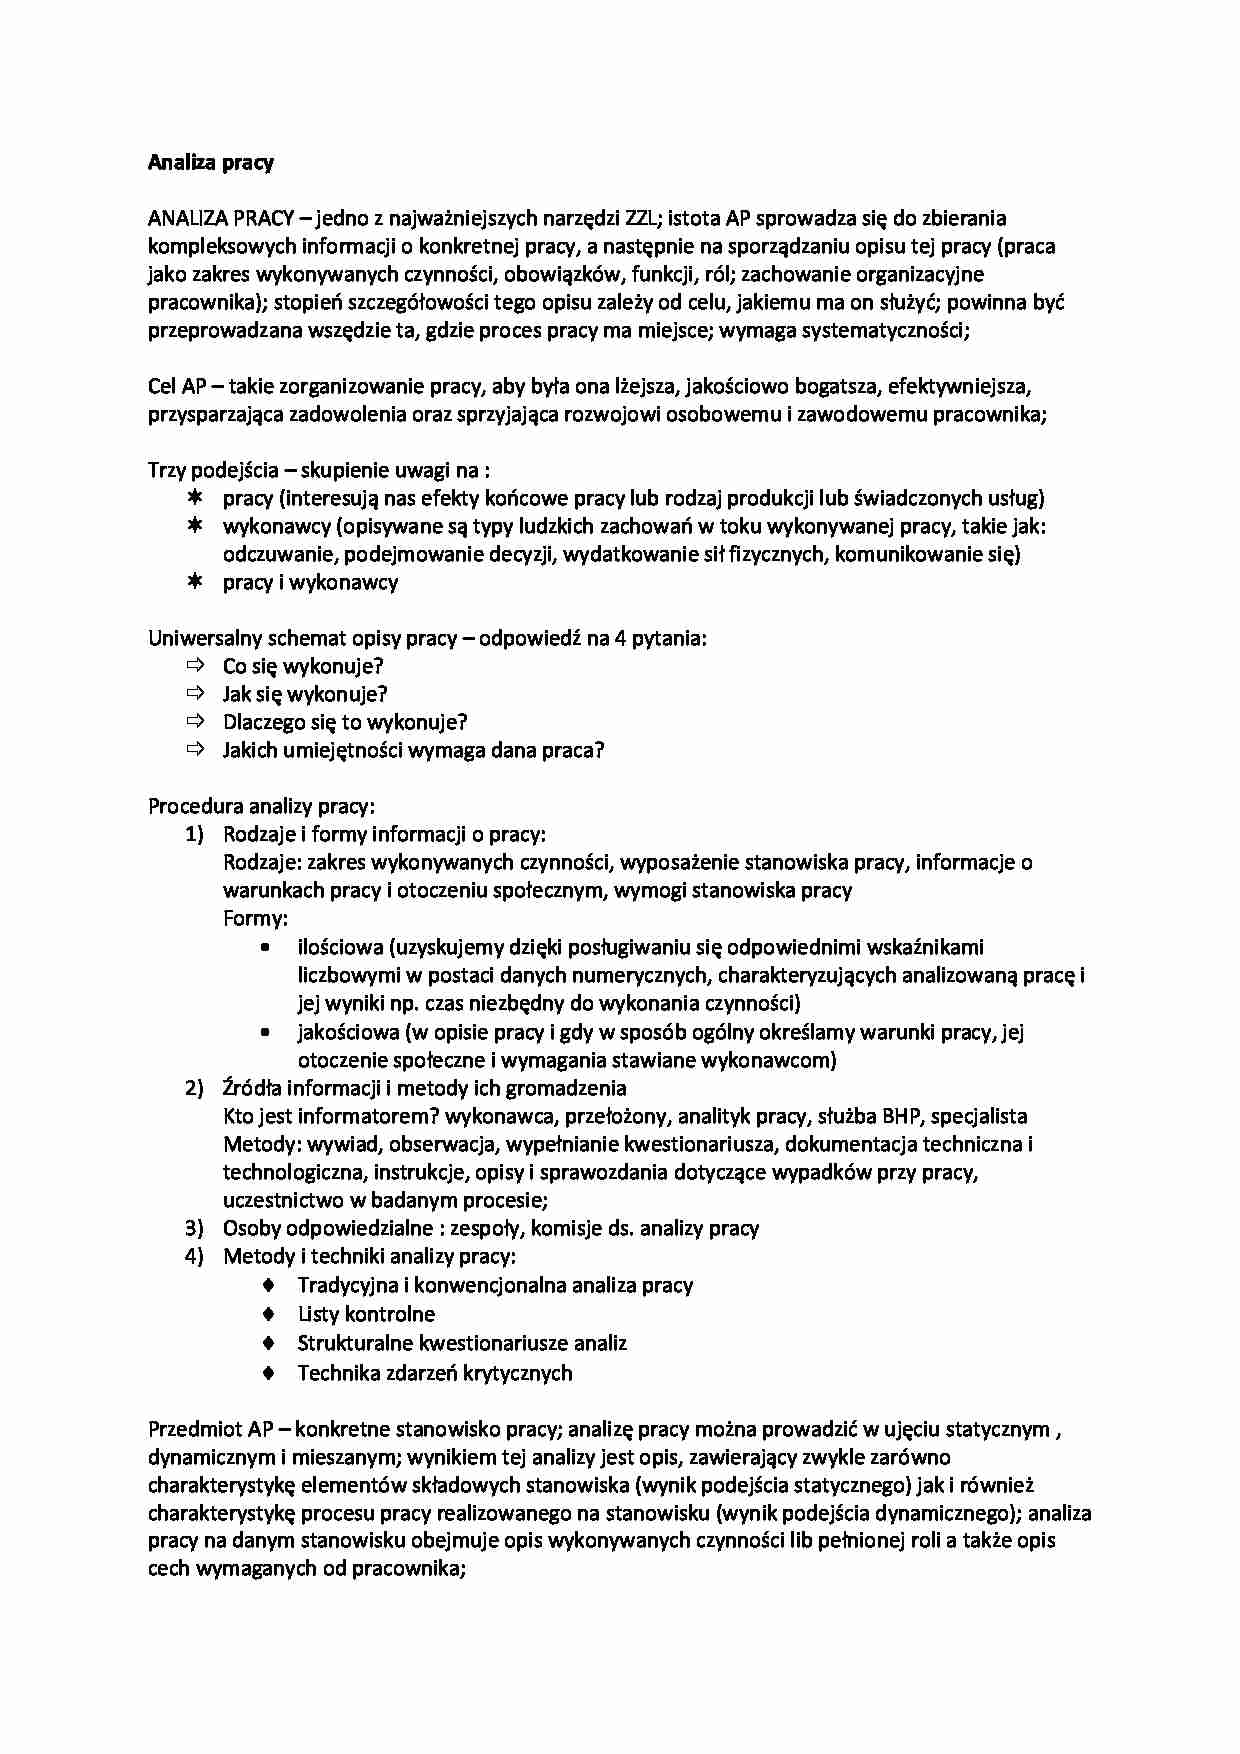 Analiza pracy i zarządzanie zasobami ludzkimi - strona 1